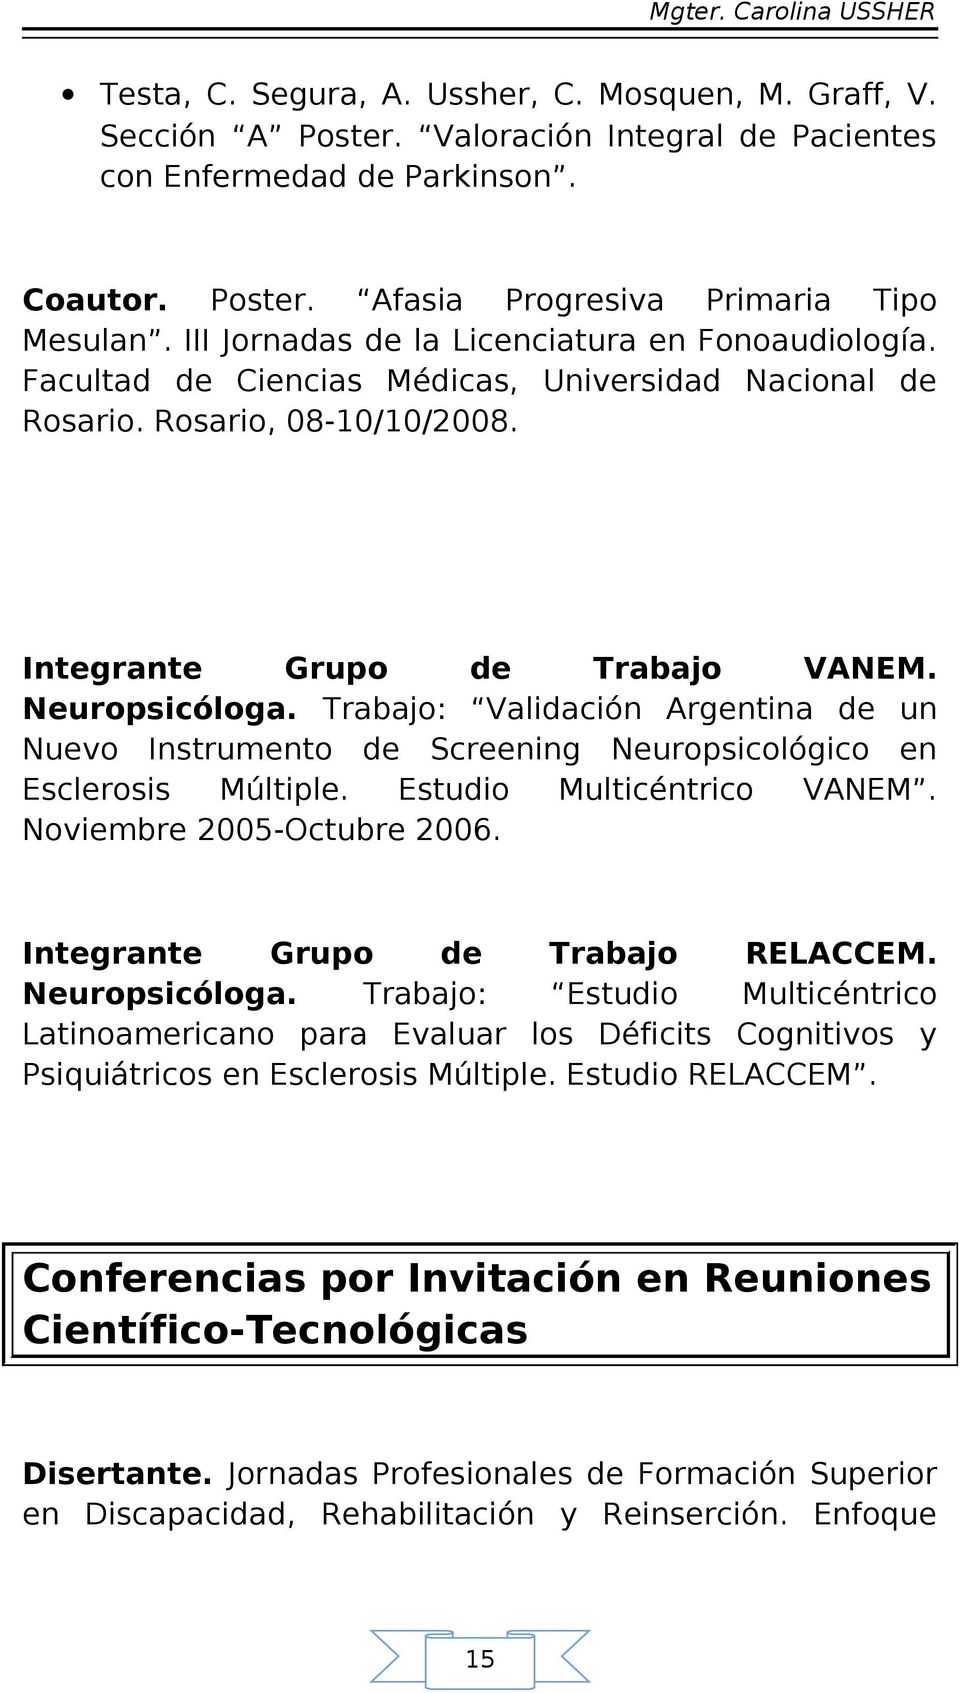 Trabajo: Validación Argentina de un Nuevo Instrumento de Screening Neuropsicológico en Esclerosis Múltiple. Estudio Multicéntrico VANEM. Noviembre 2005-Octubre 2006.